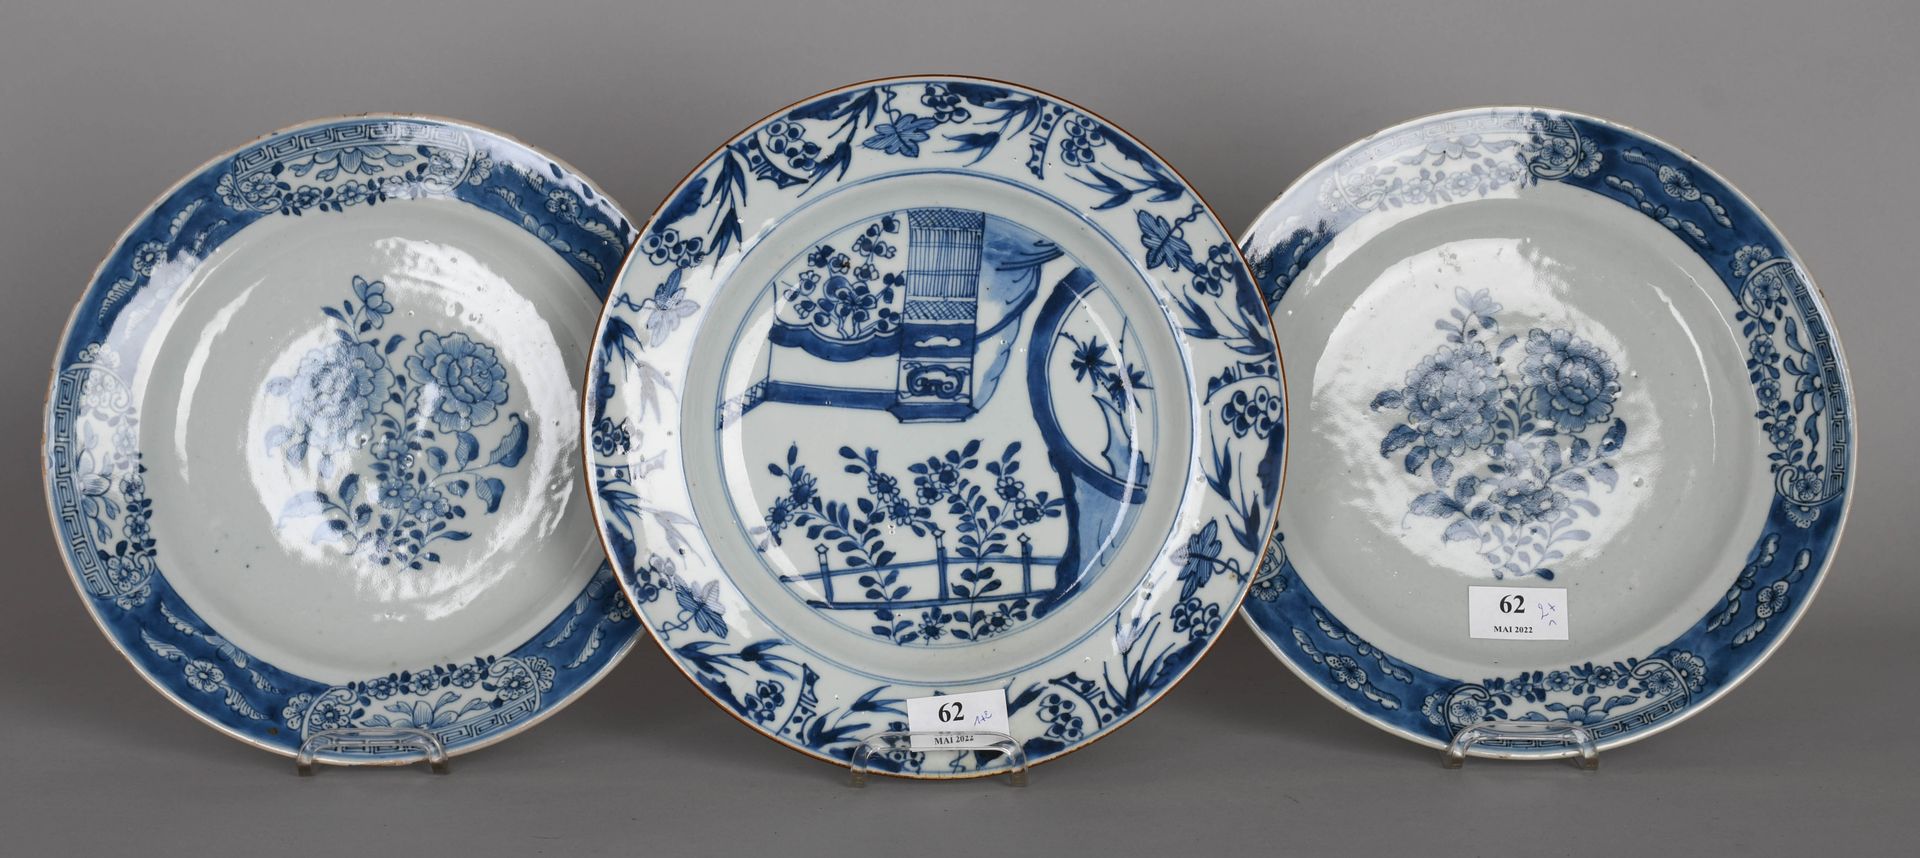 Null China, 18. Jahrhundert

Ein Paar runde Schüsseln aus weißem und blauem Porz&hellip;